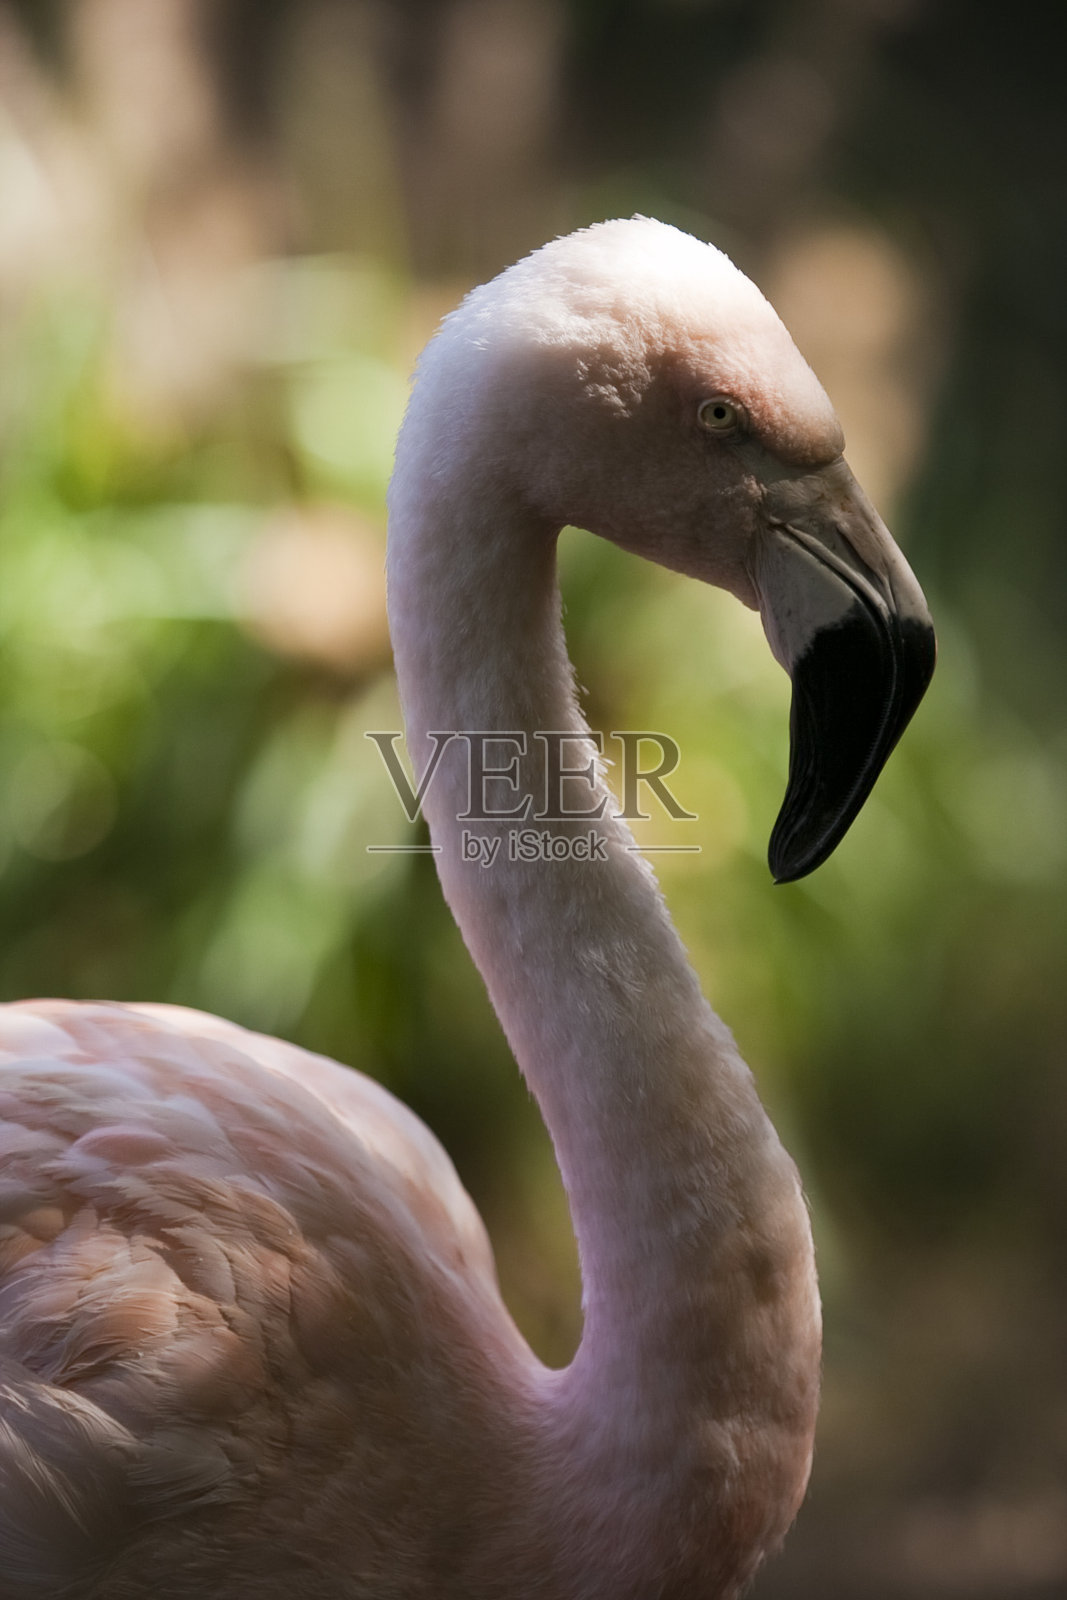 粉红色火烈鸟的特写照片摄影图片